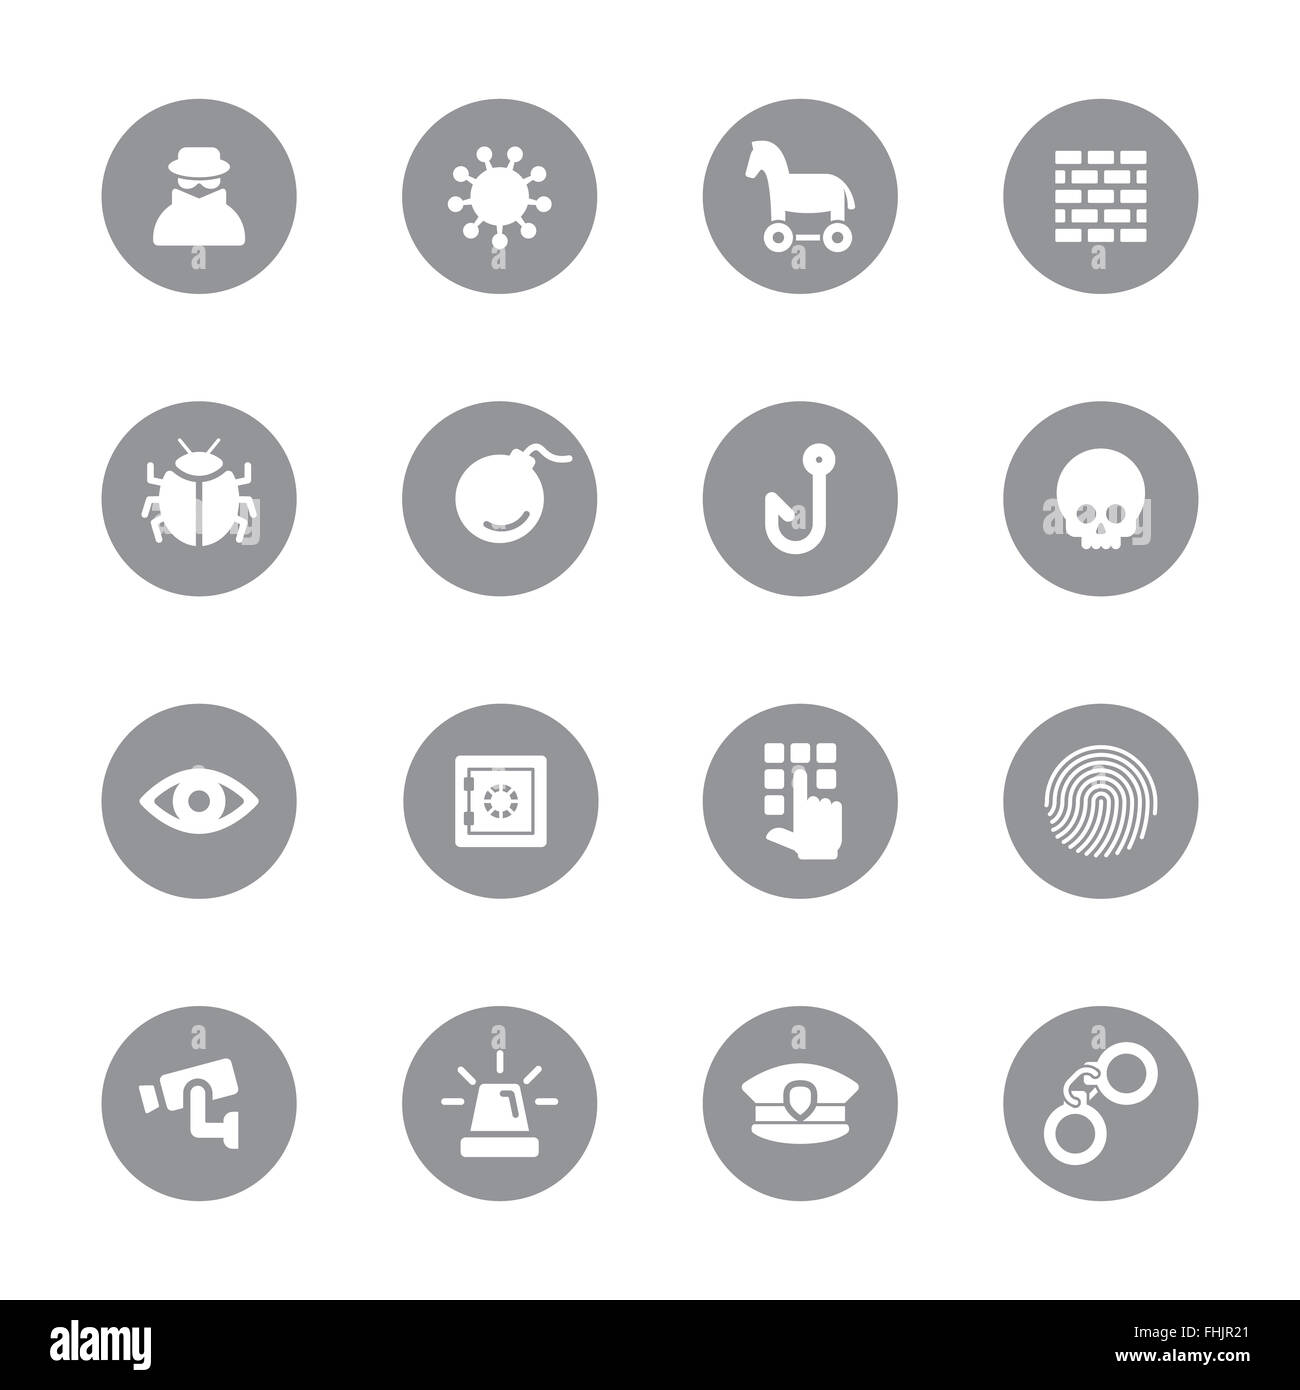 [JPEG] graue flache Icon-Set 7 auf Kreis für Web-Design, User-Interface (UI), Infografik und mobile apps Stockfoto